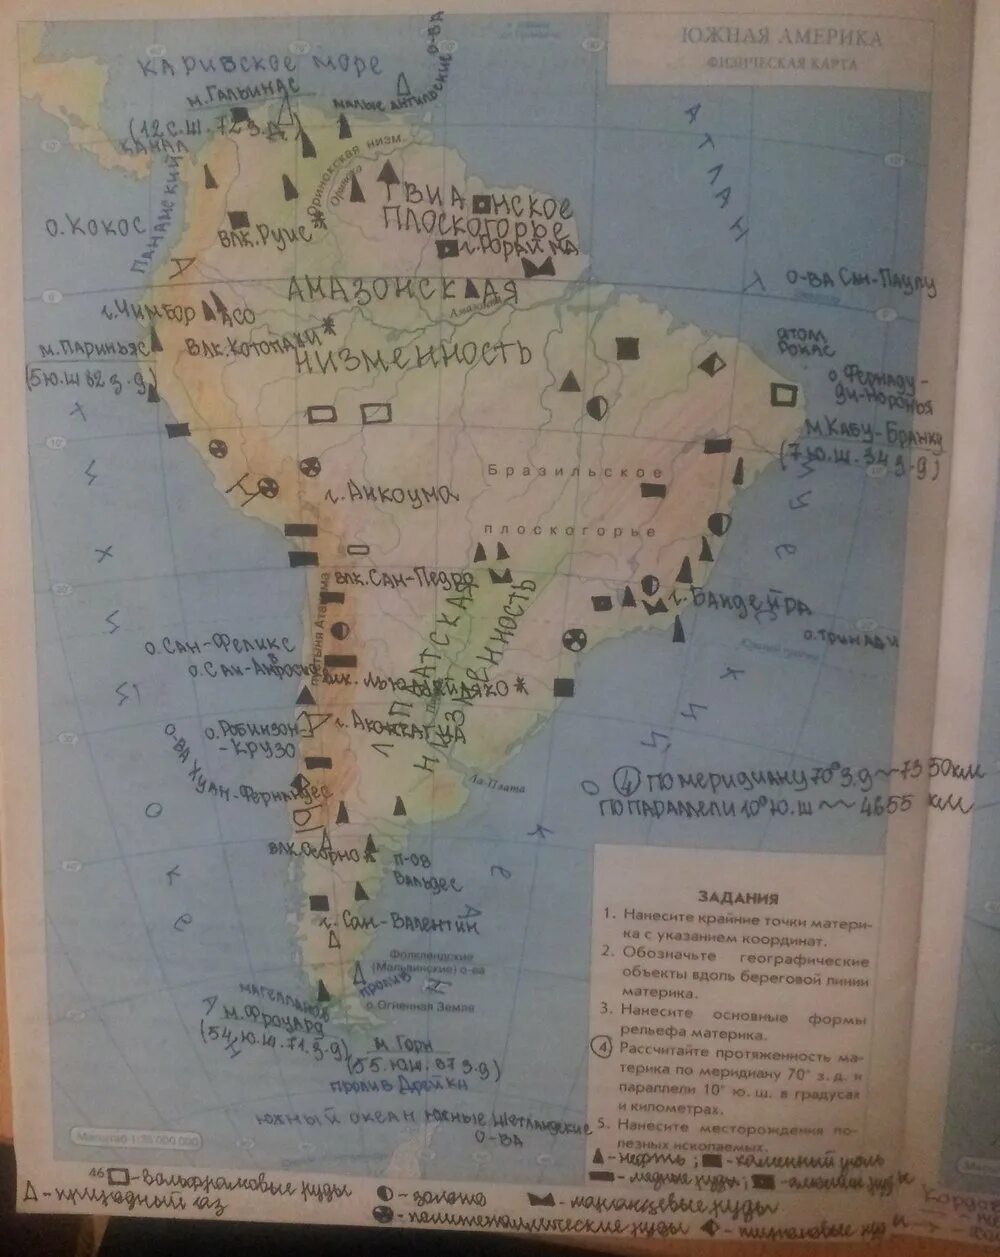 География 7 класс Дрофа Южная Америка. География 7 класс контурные карты Южная Америка гдз. Карта Южной Америки 7 класс география. Физическая карта Южной Америки 7 класс география. Подпишите на контурной карте южной америки названия